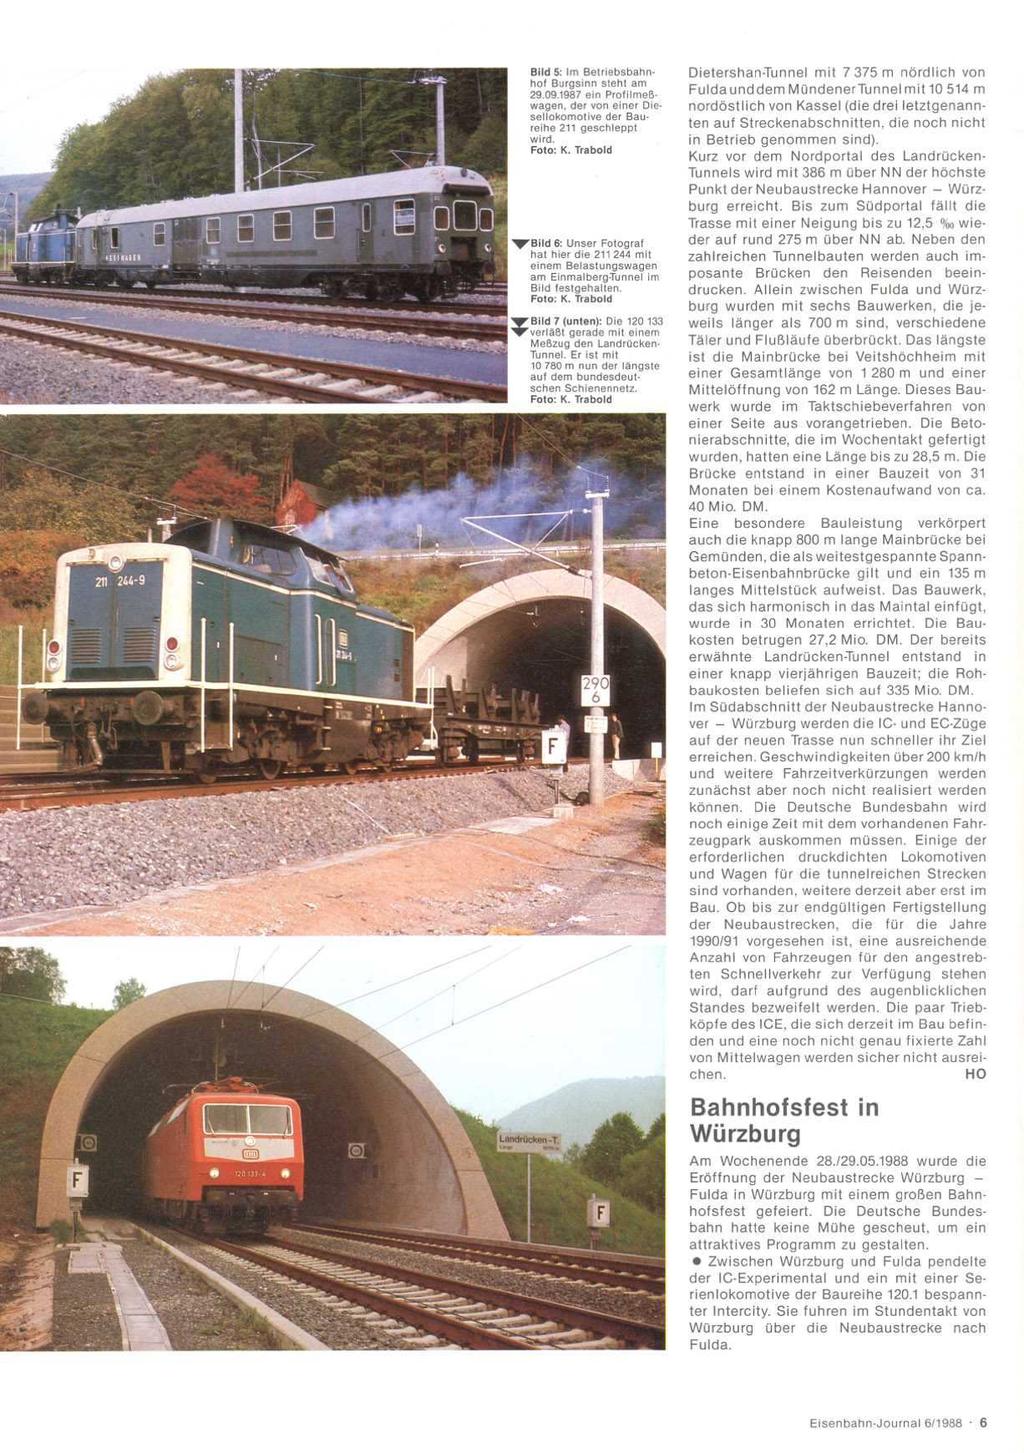 Bild 5: Im Betriebsbahn hof Burgsinn steht am 29 09 1967 ein Profiimeß wagen, der von einer Diesellokomotive der Baureihe 211 geschleppt wird. Foto: K.